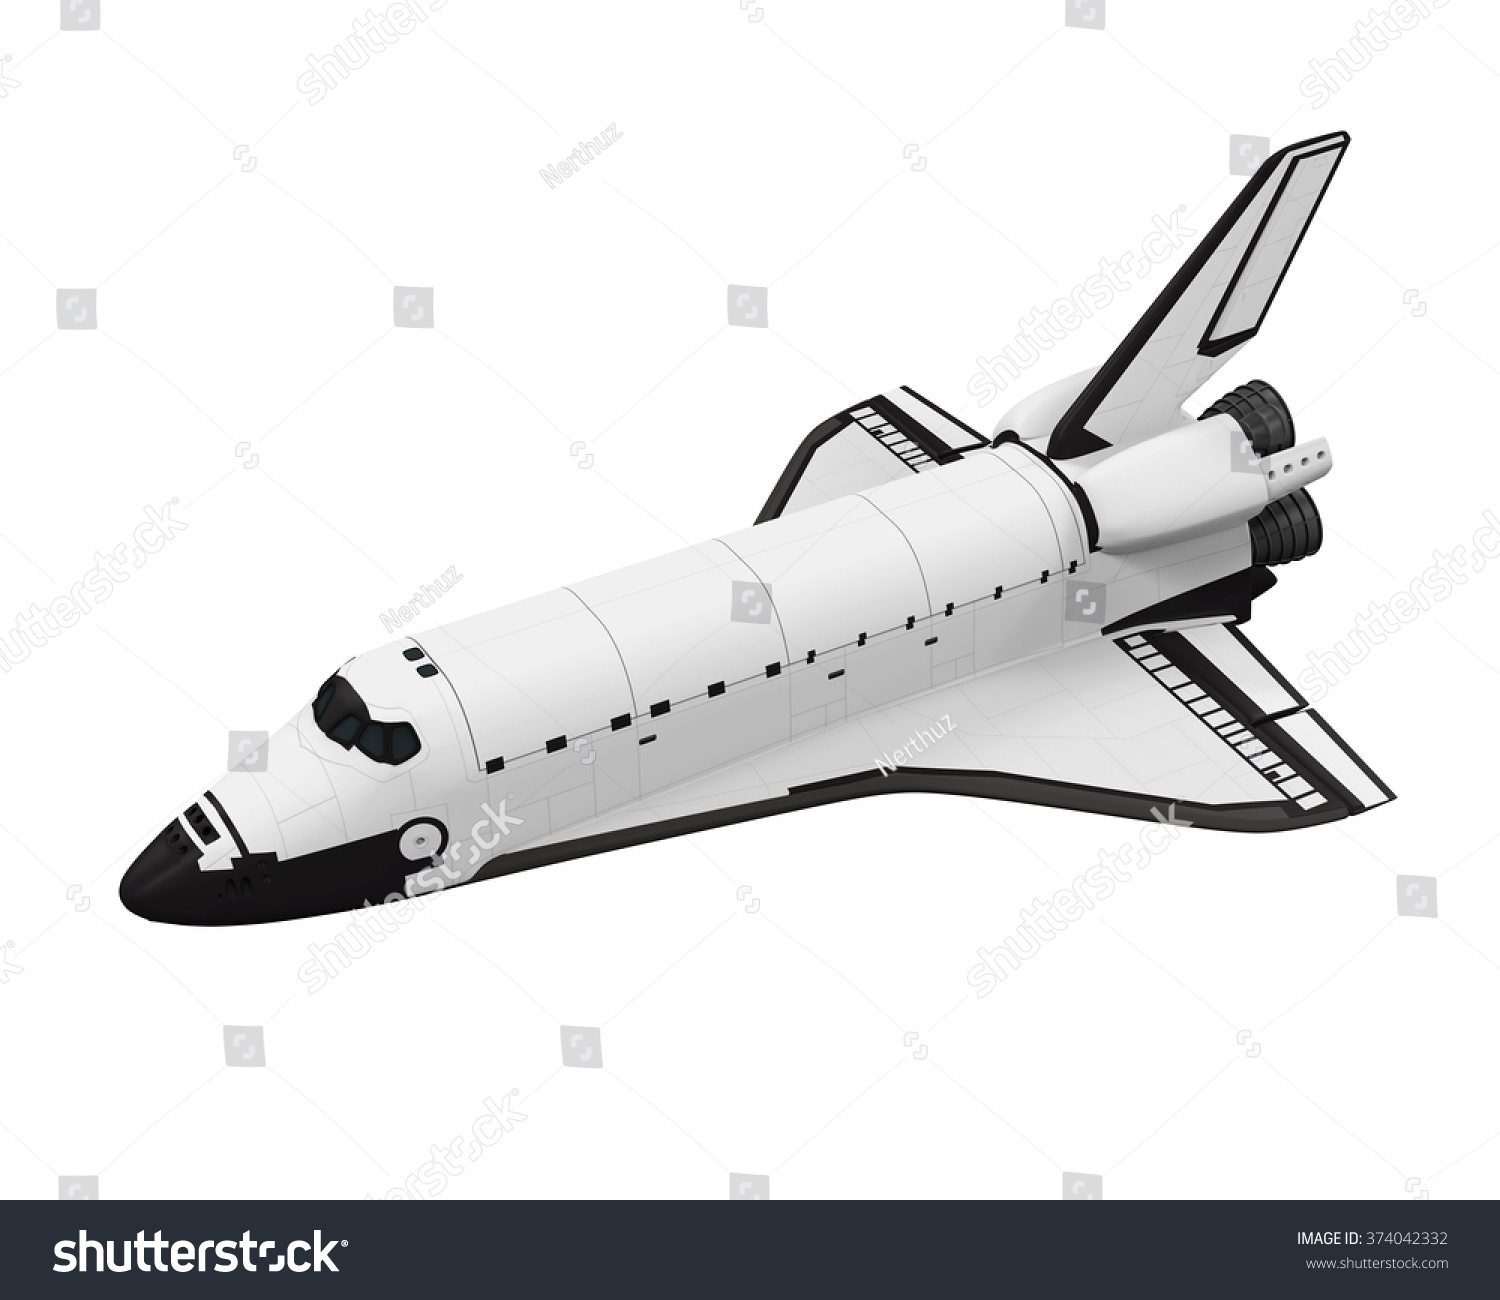 スペースシャトル のイラスト素材